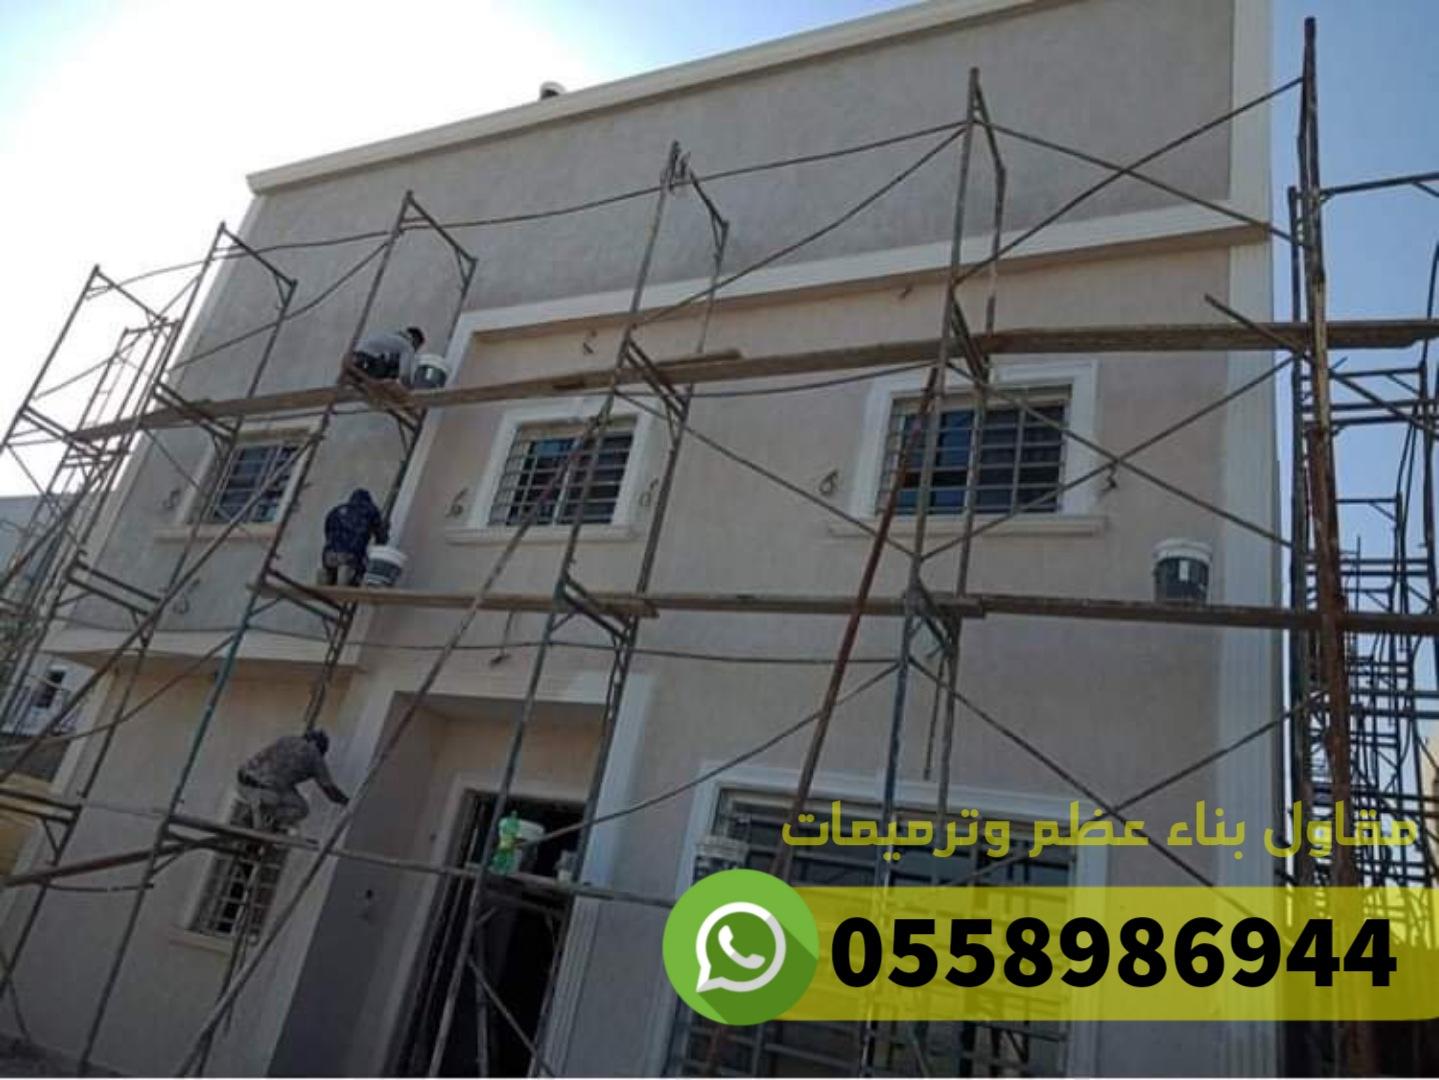 ترميم مباني في العوالي مكة 950018164